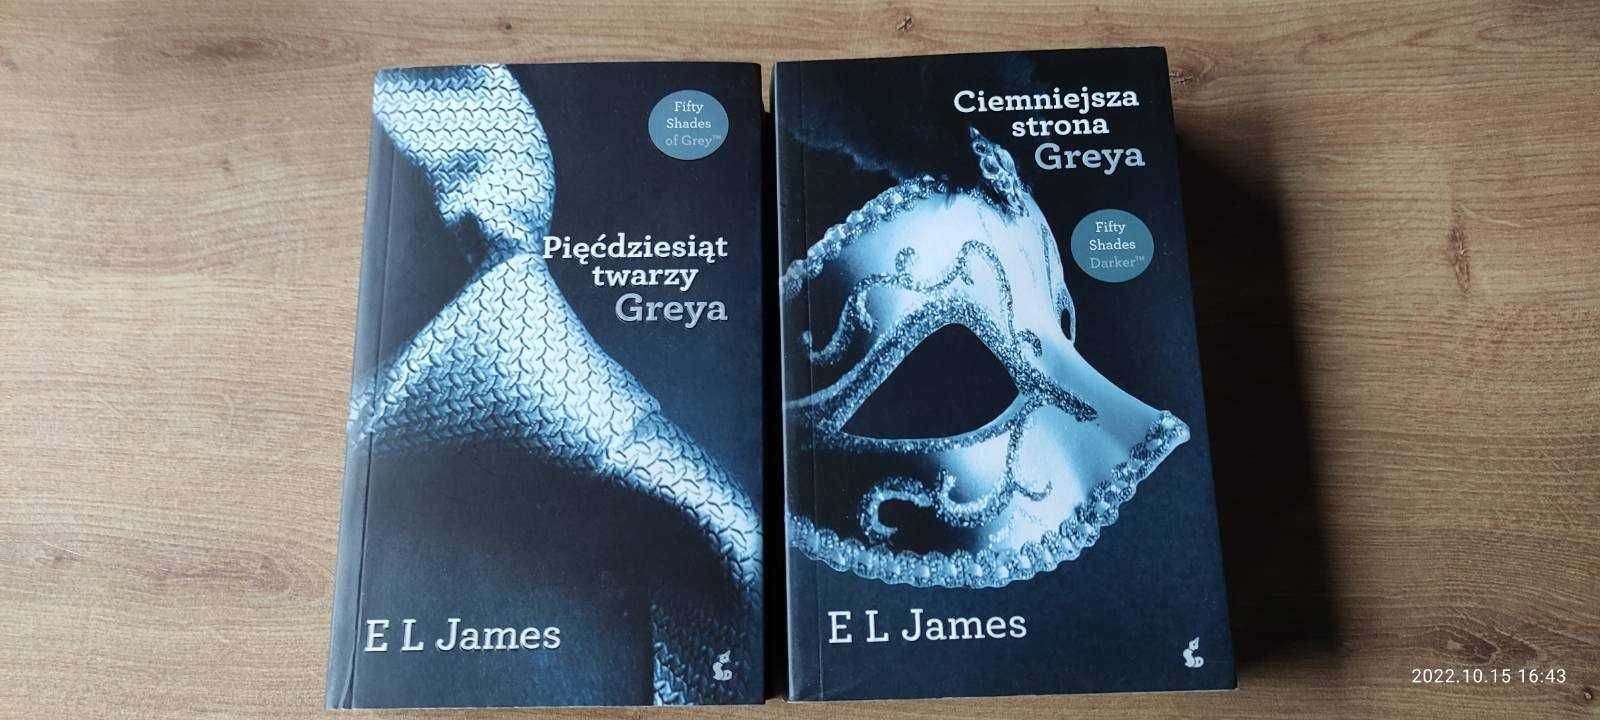 Pięćdziesiąt twarzy Greya - zestaw 2 książek